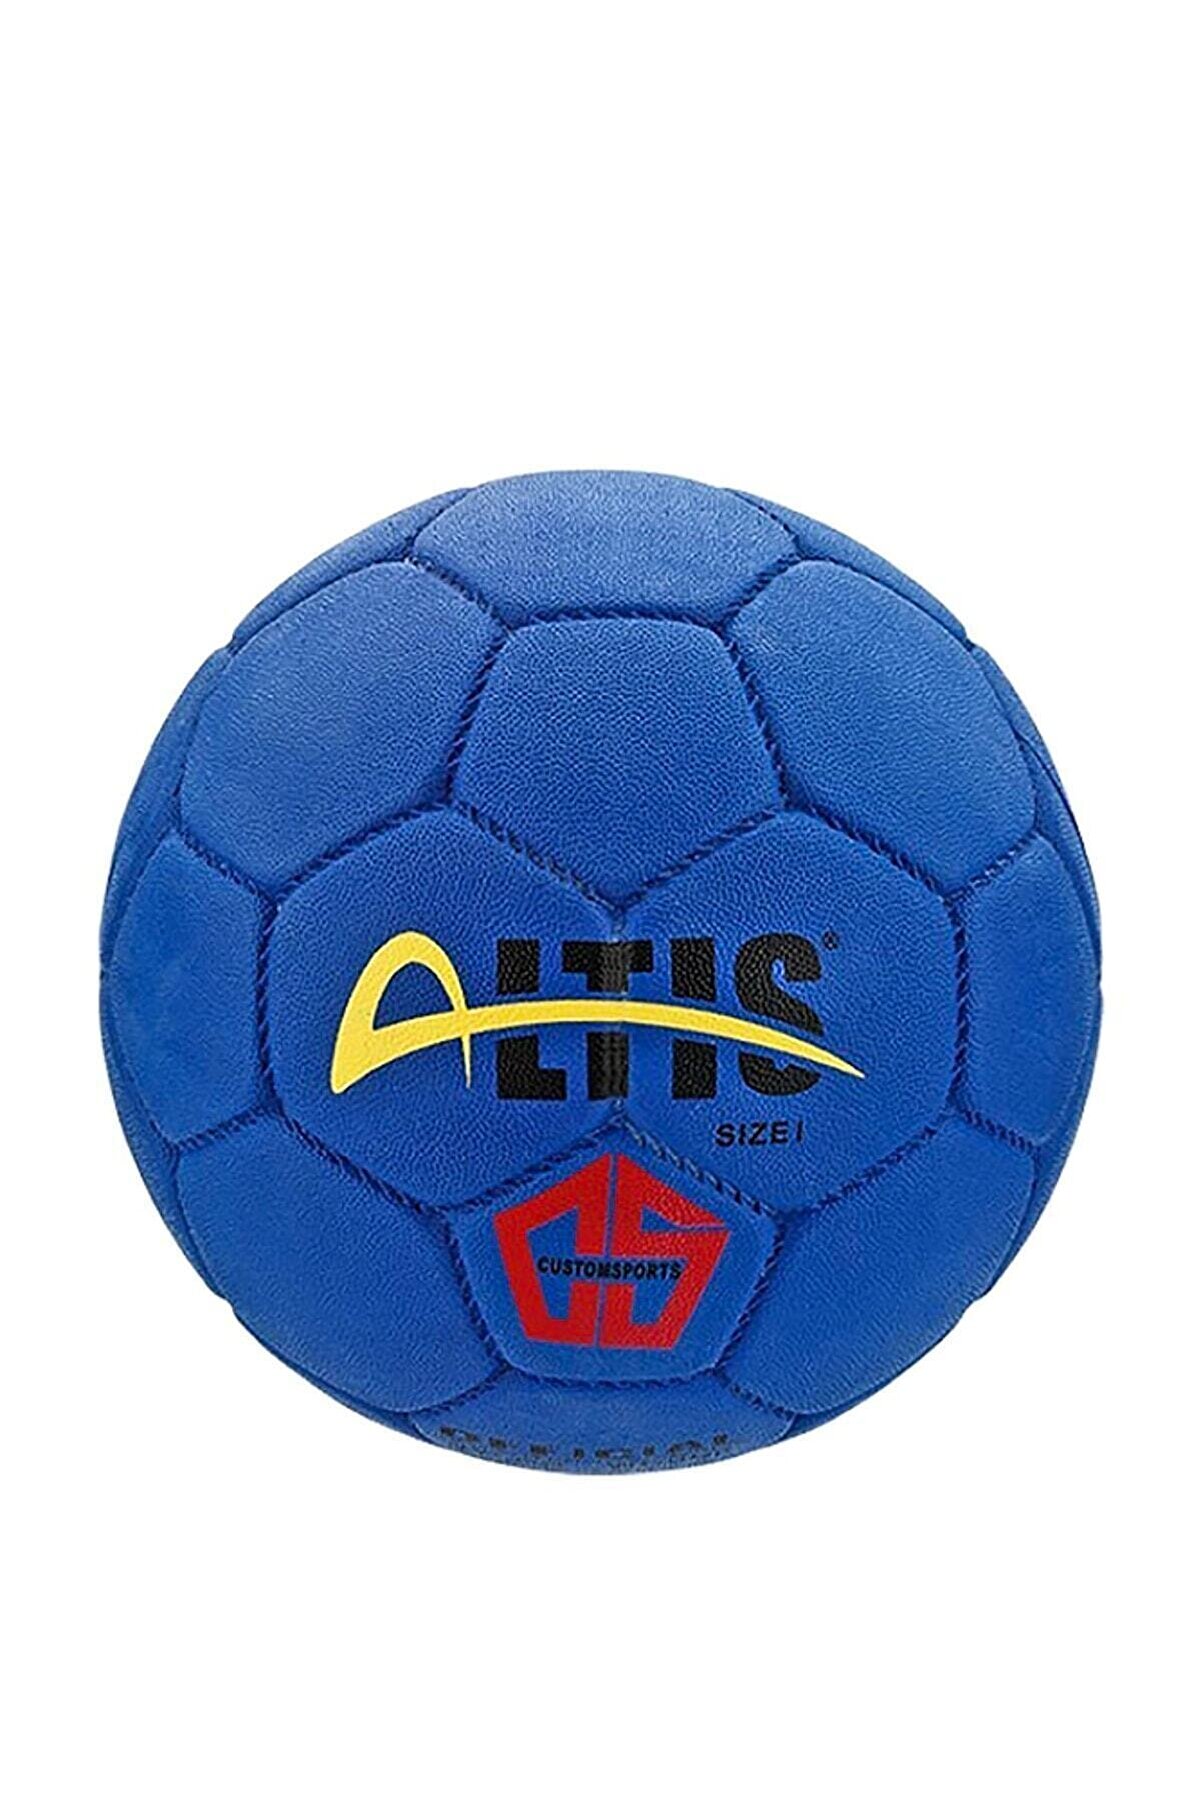 ALTIS Hb-60 Kauçuk Hentbol Topu Mavi